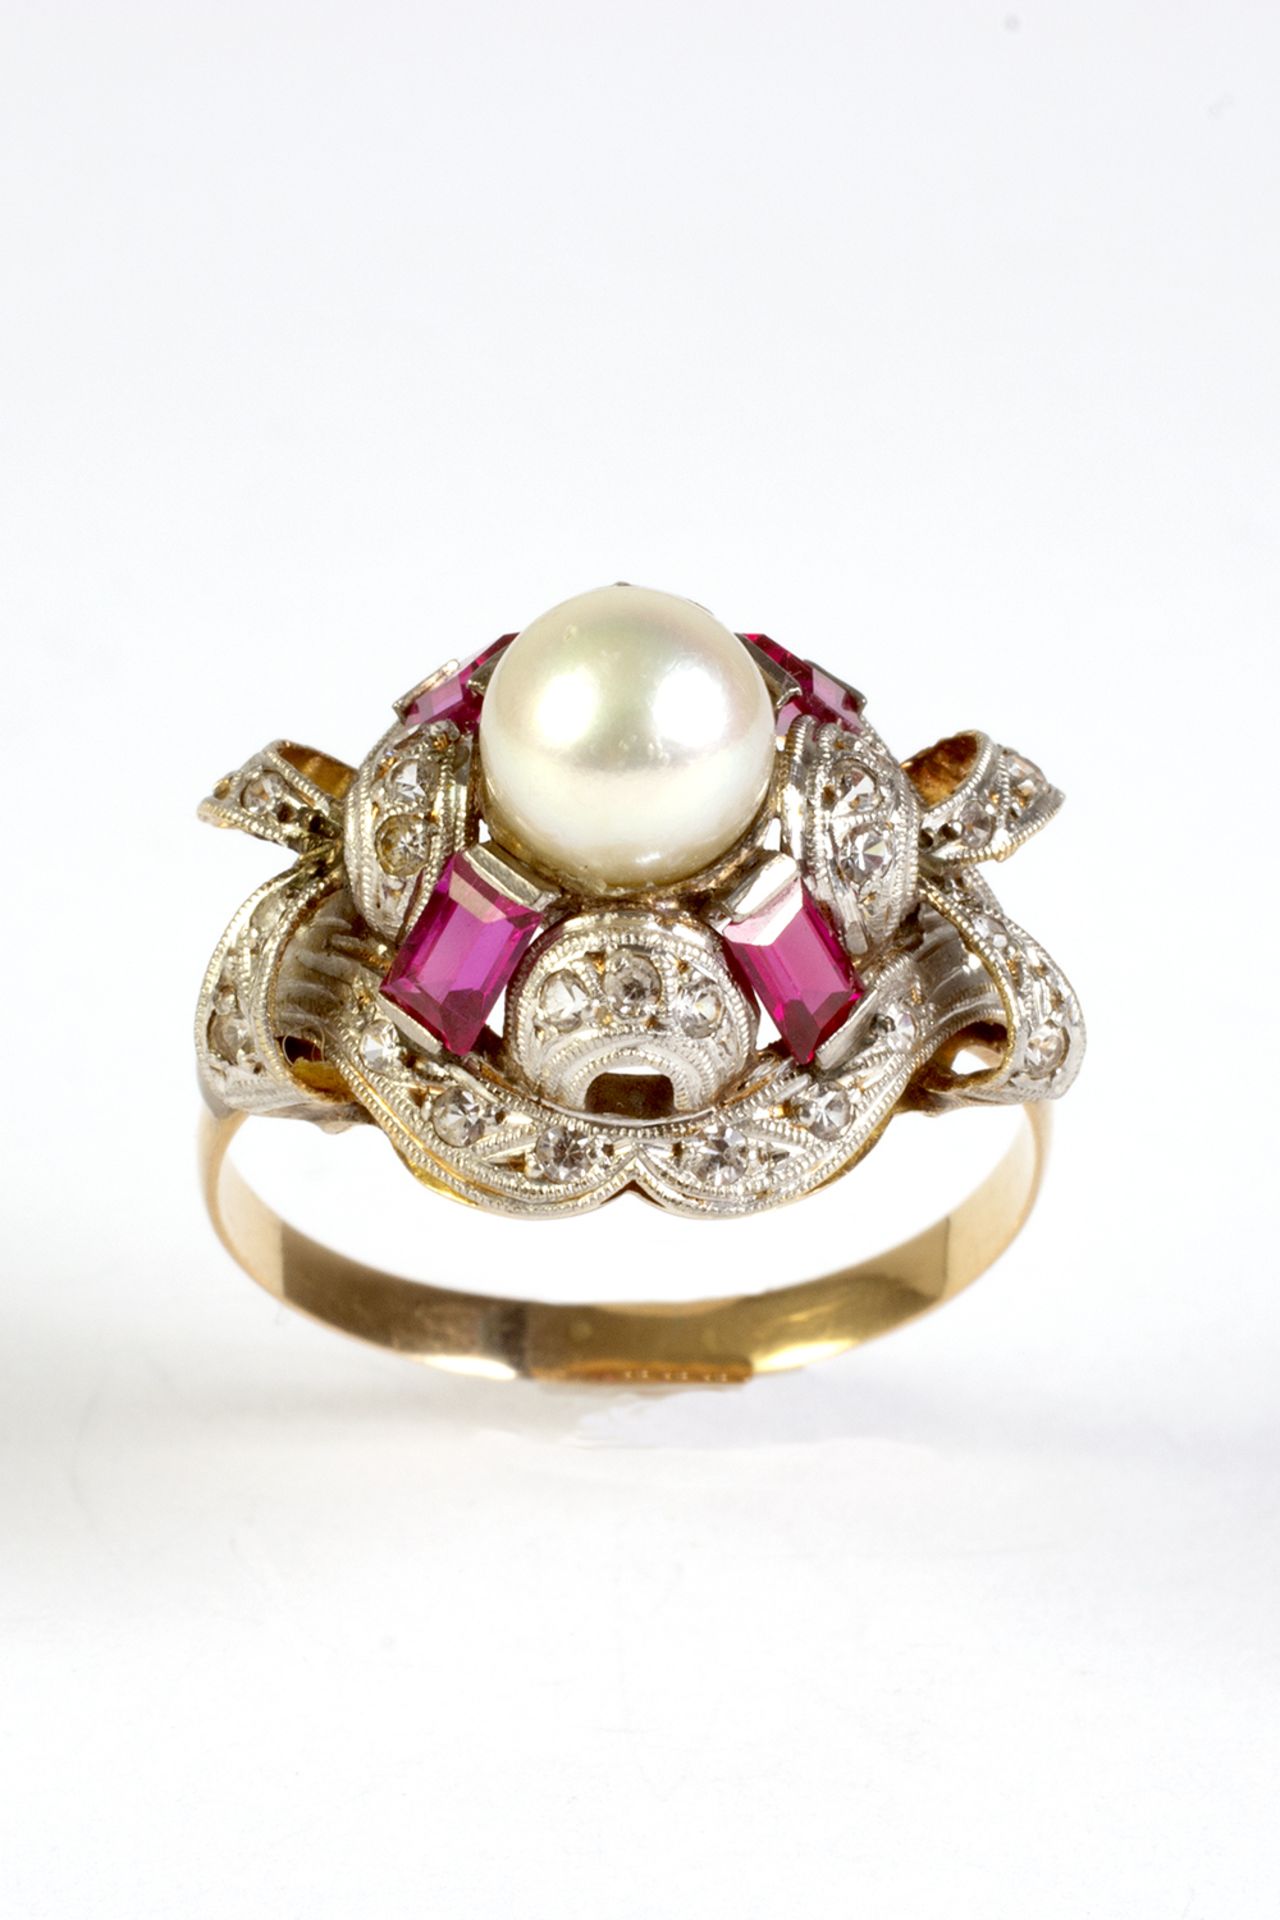 Sortija en oro y vistas en platino con perla cultivada de 6 mm, zafiros blancos y símiles de rubí.